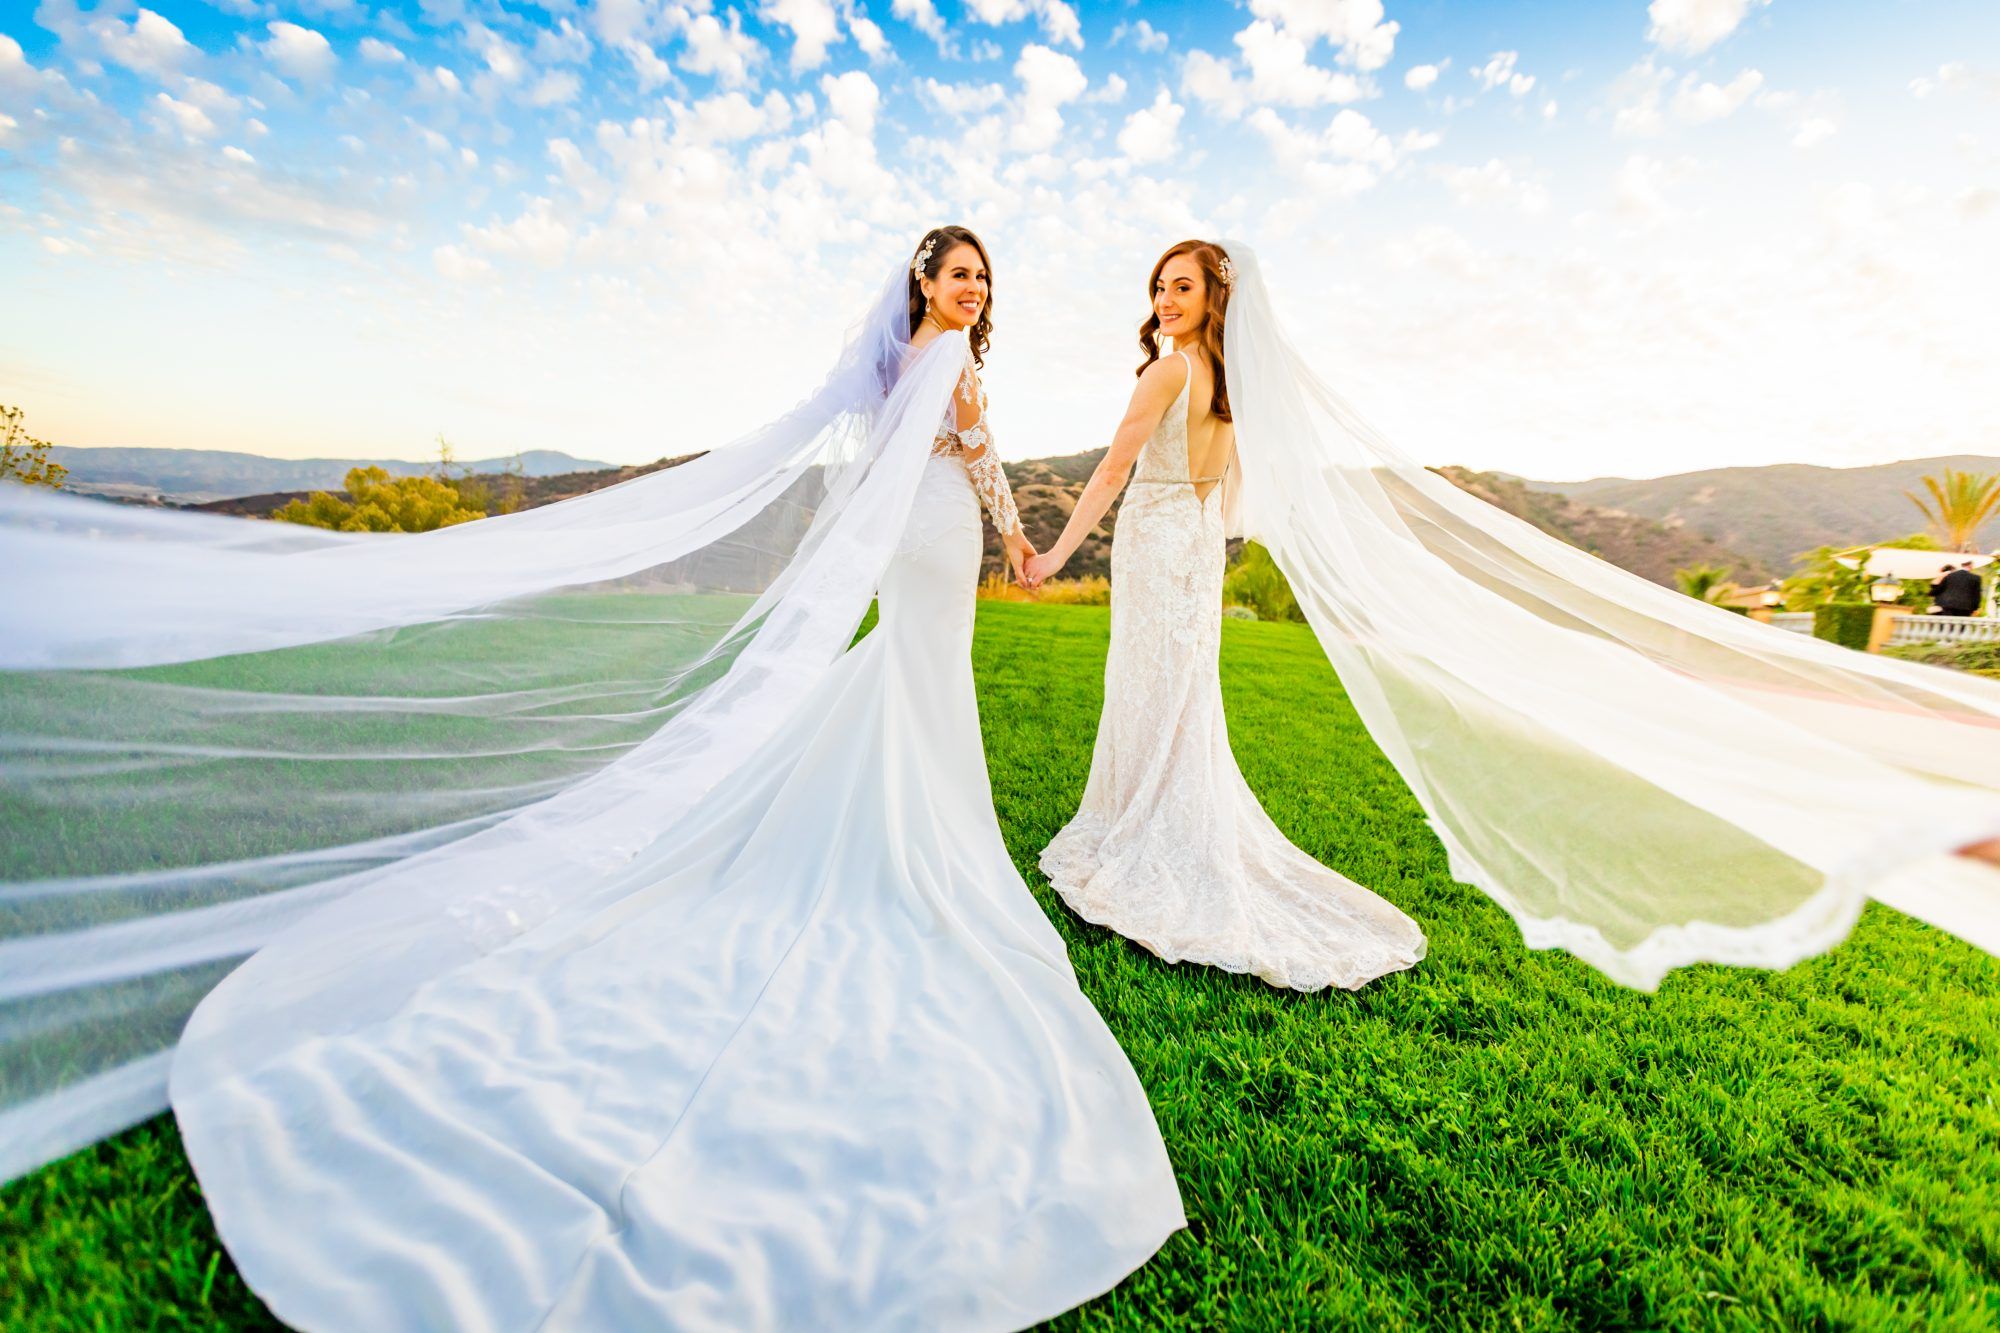 웨딩 드레스에서 얼룩을 제거하는 방법, 하얀 웨딩 드레스를 입은 2 명의 여성